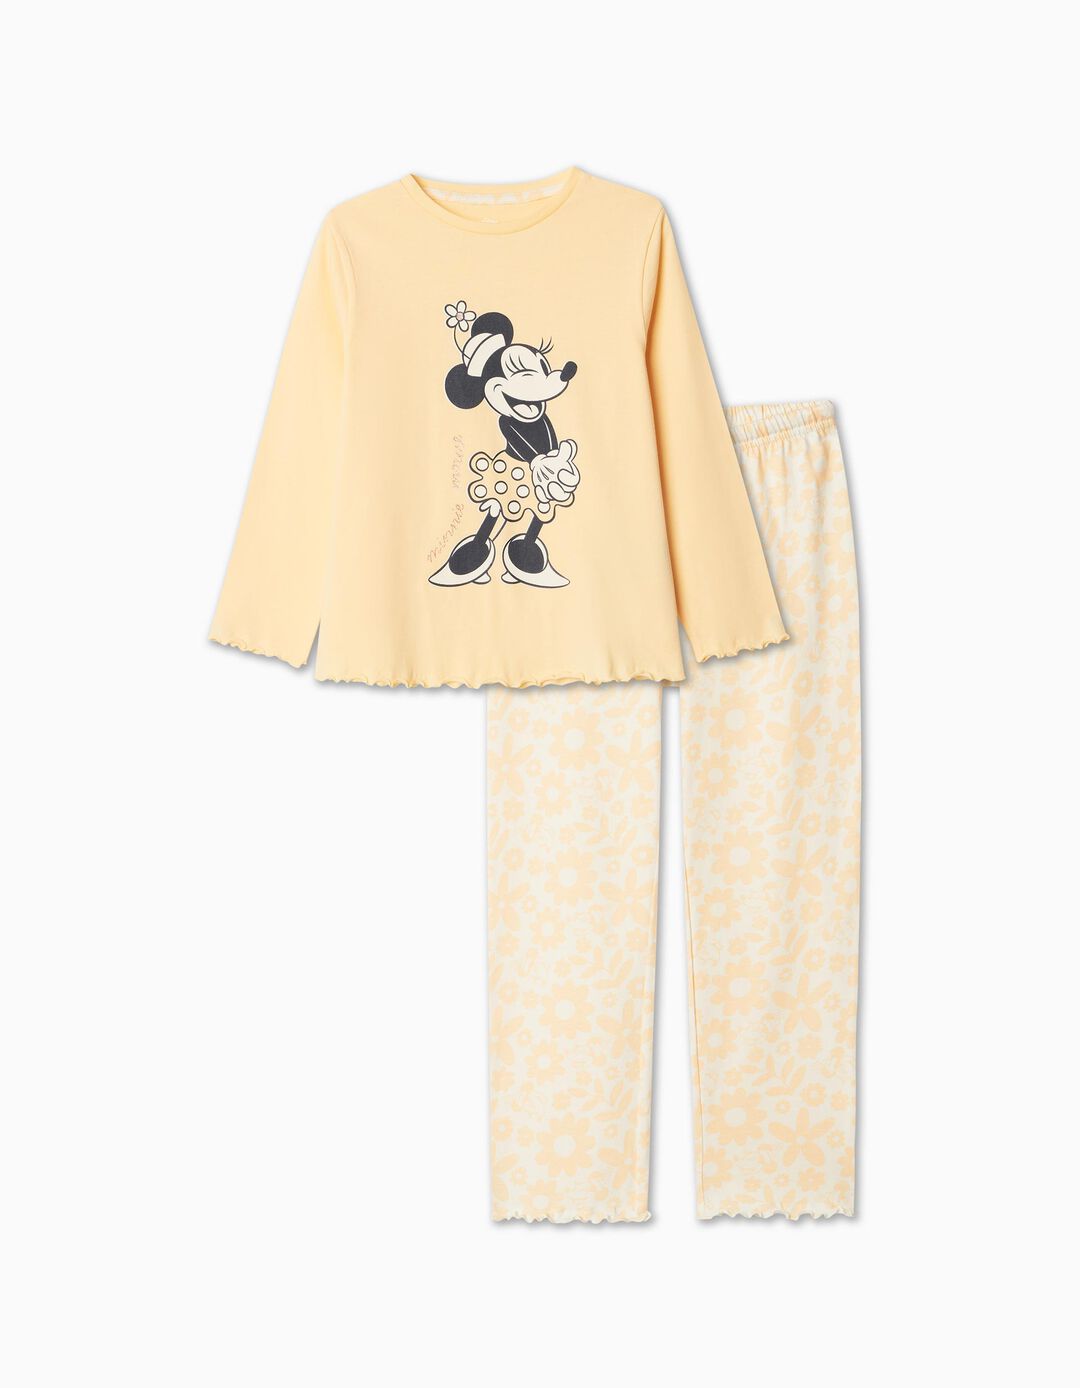 'Disney' Pajamas, Girl, Light Orange